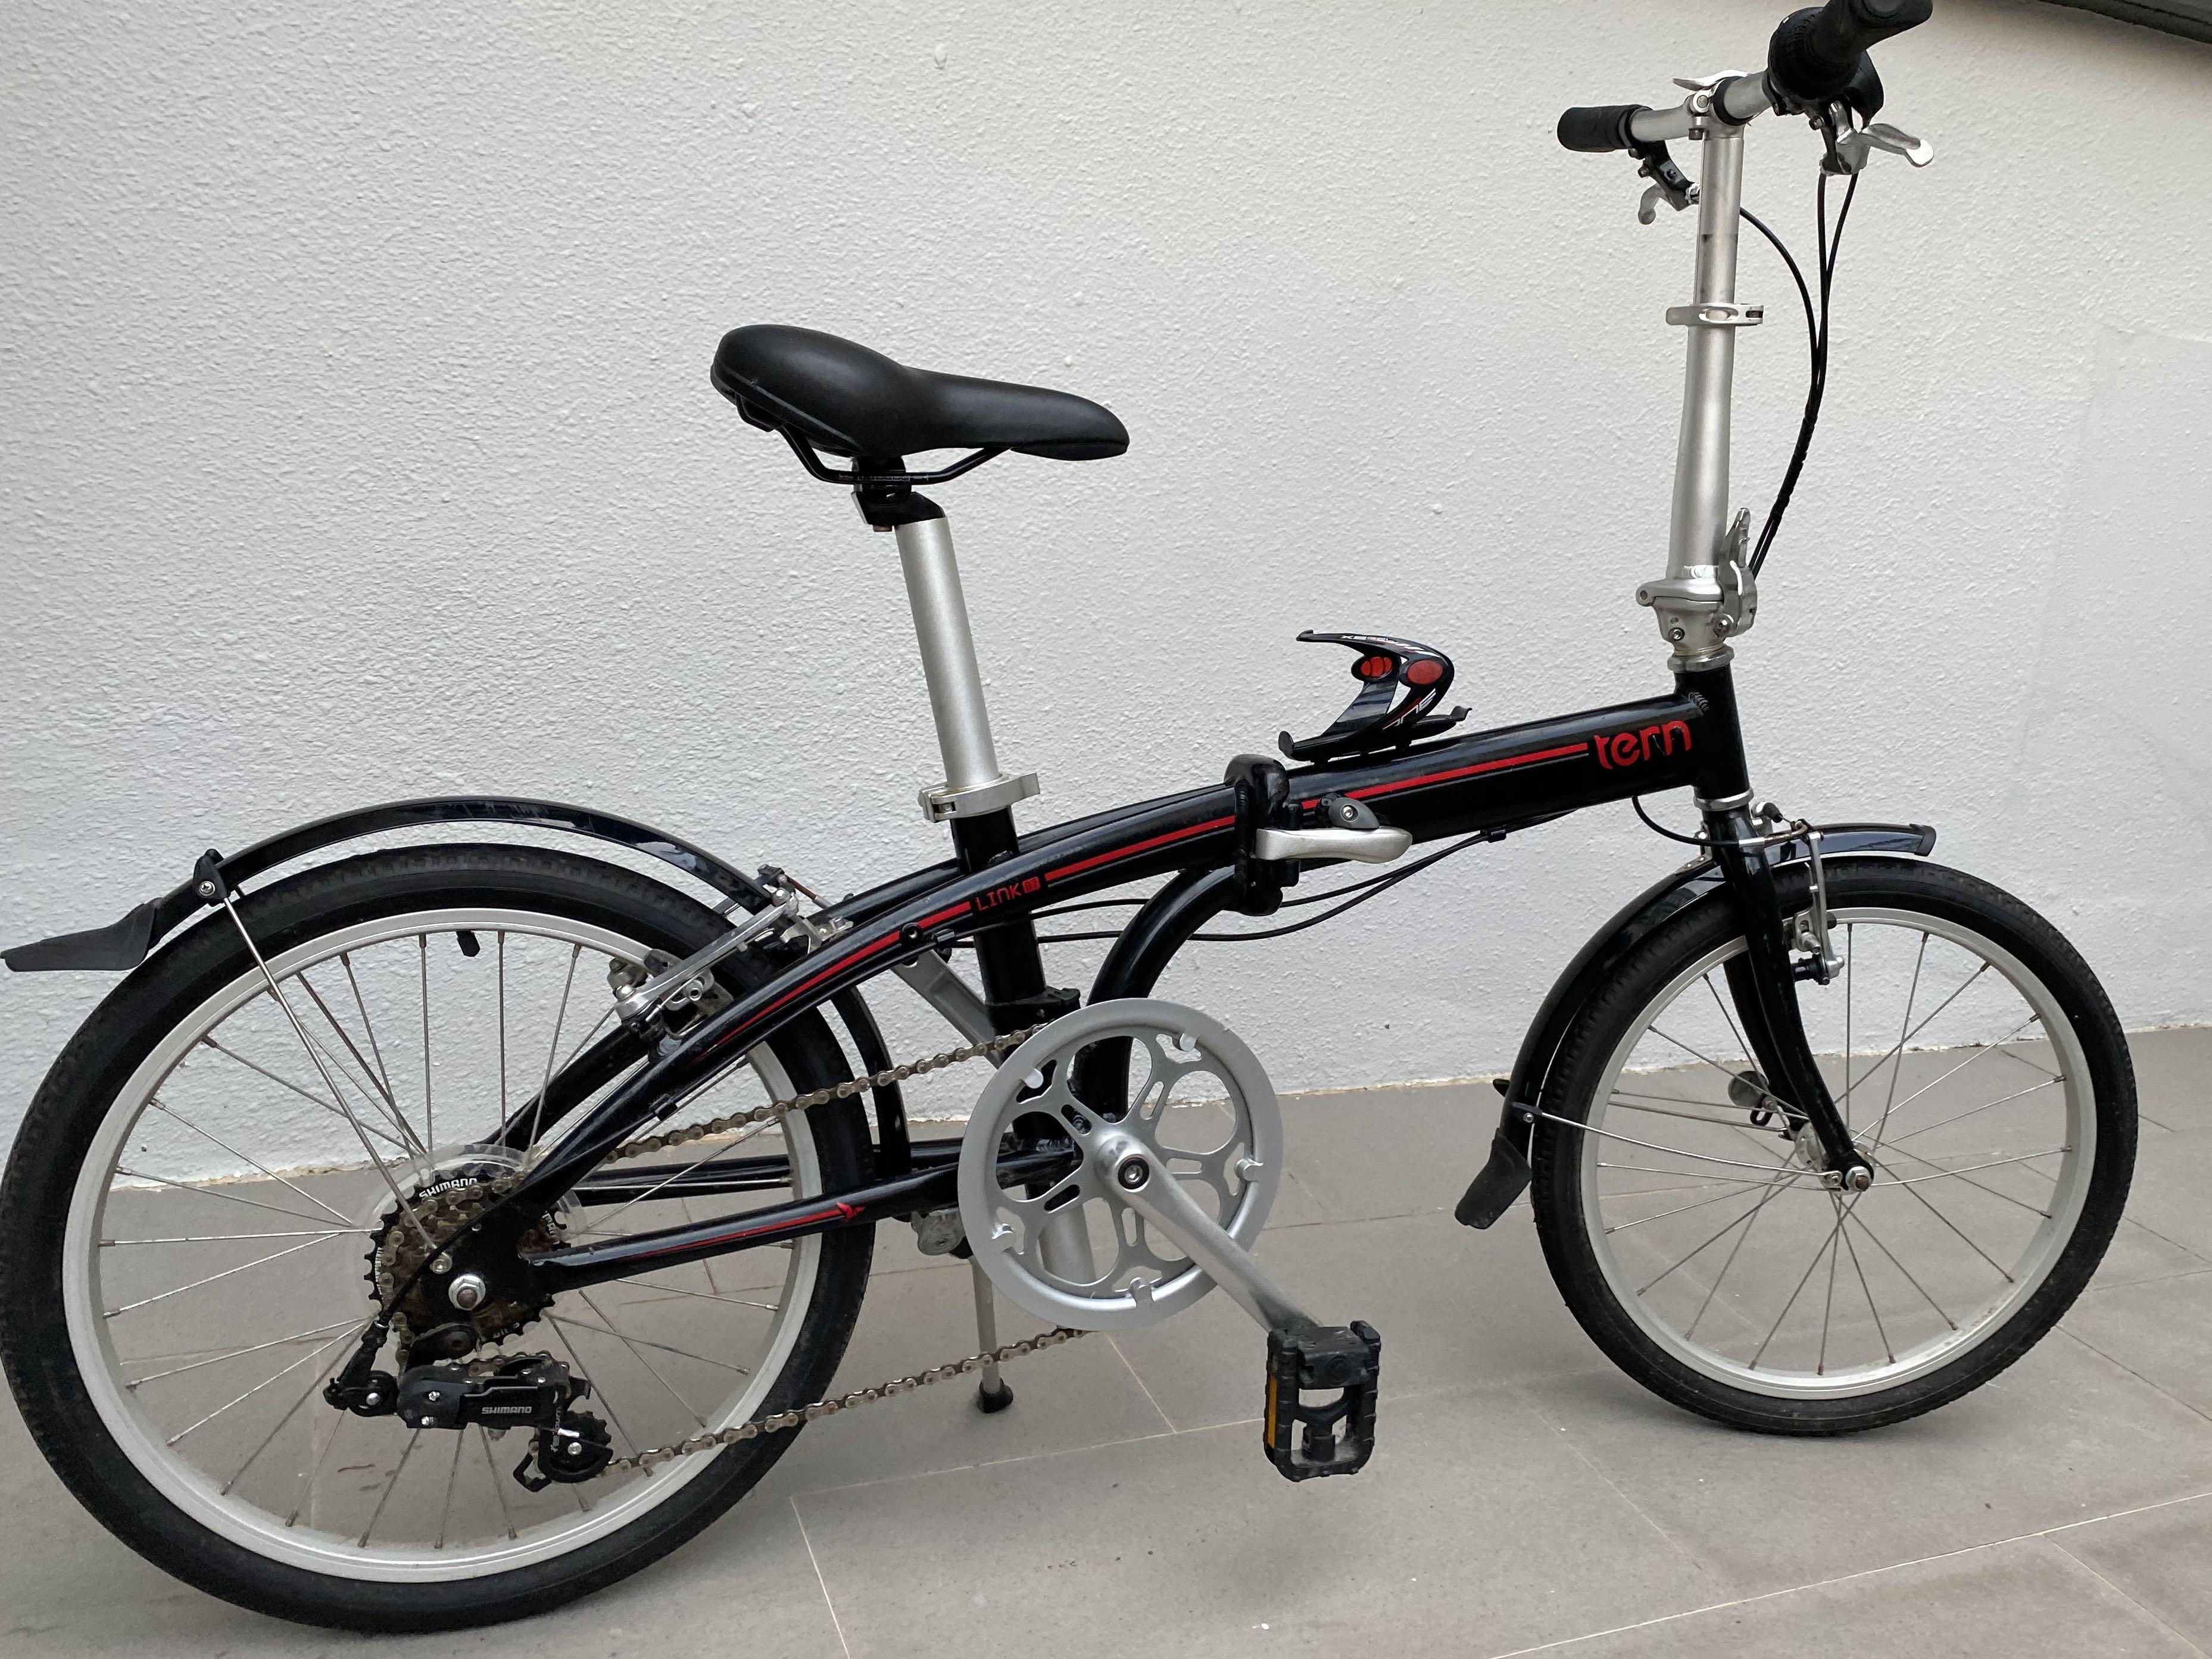 tern link b7 2019 folding bike